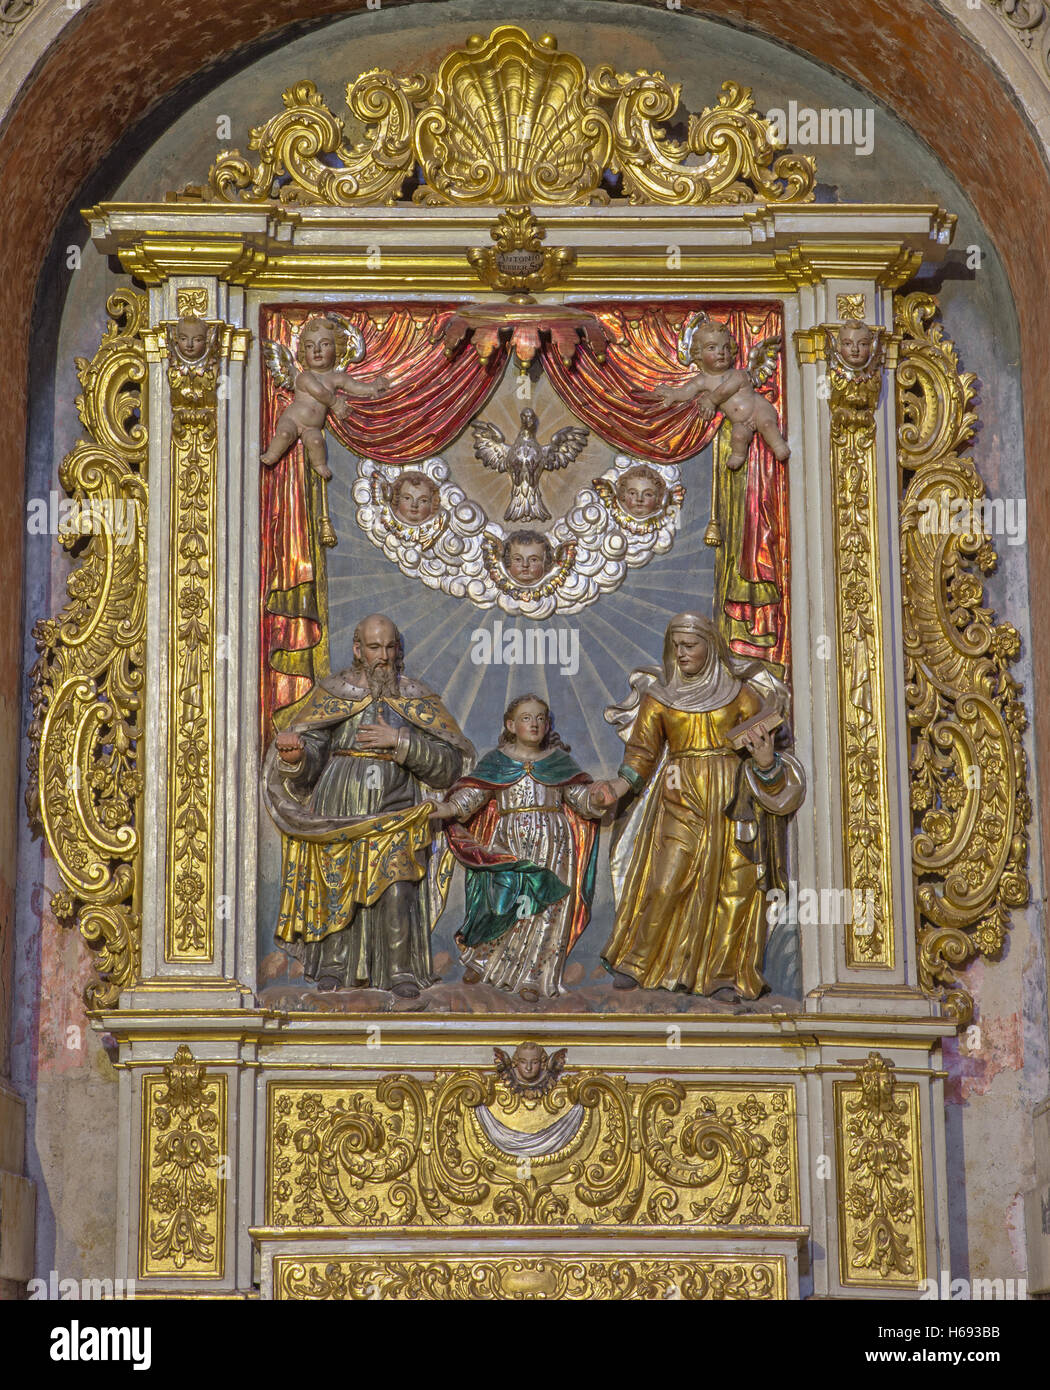 Salamanca - il barocco scolpito rilievo policromo di San Gioacchino, St. Ann e Virgim Maria nella nuova Cattedrale Foto Stock